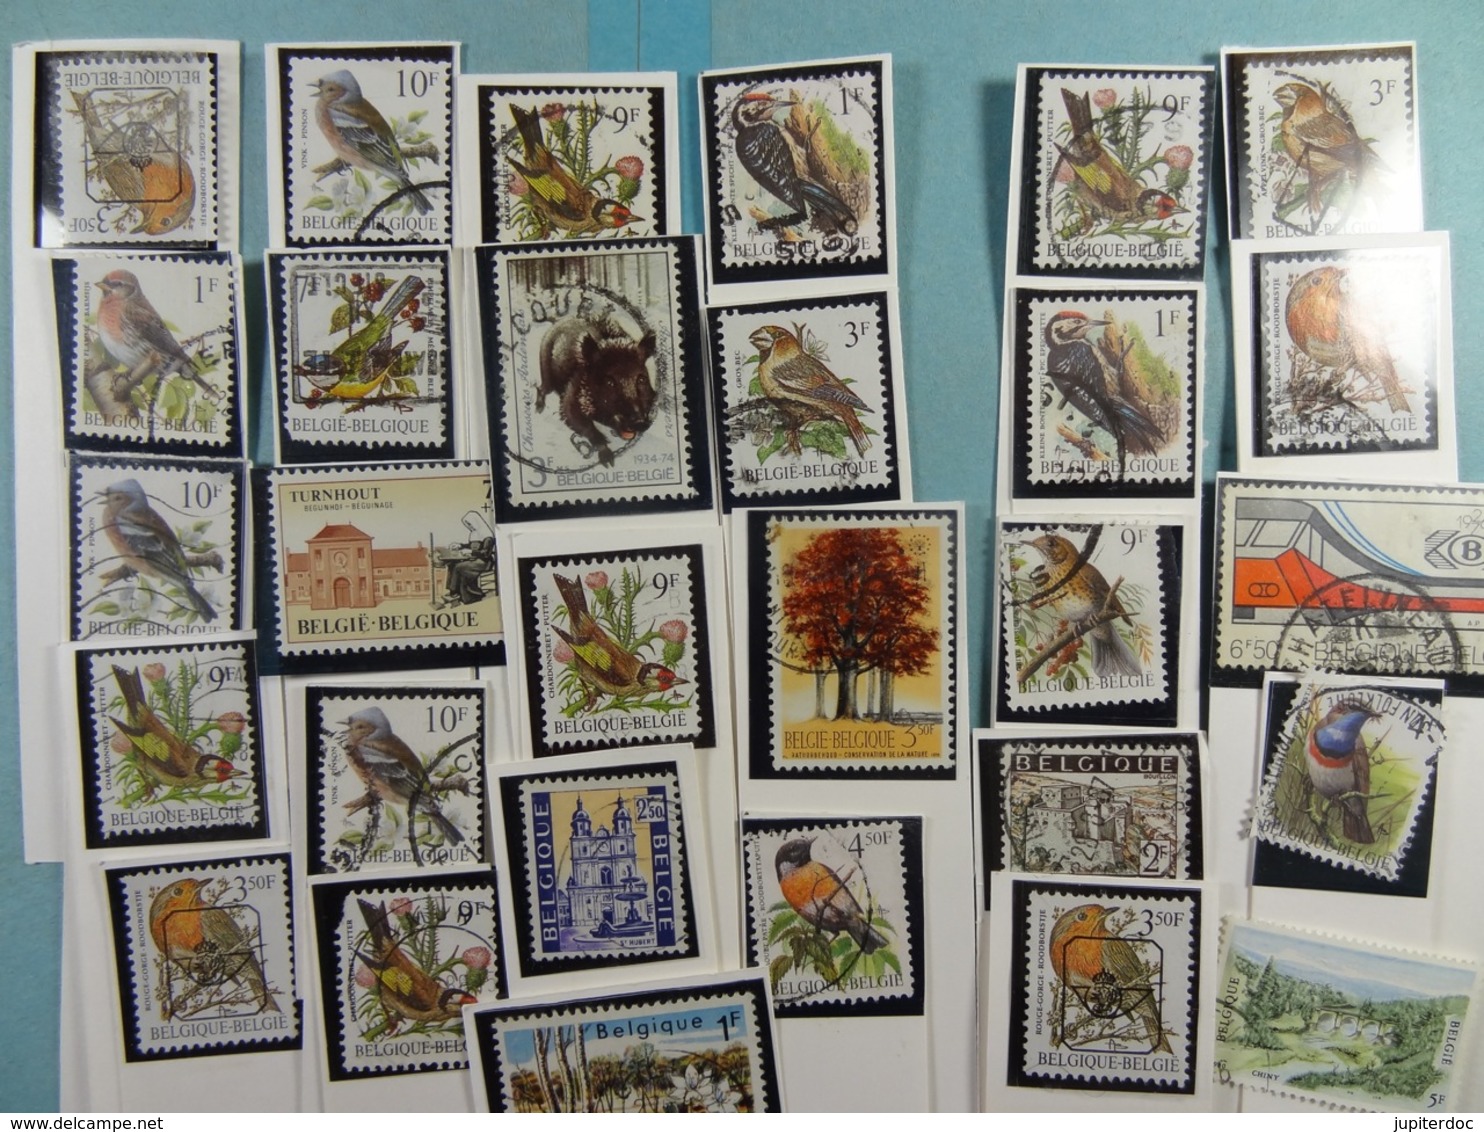 Lot d'environ 250 timbres de Belgique (tous scannés)